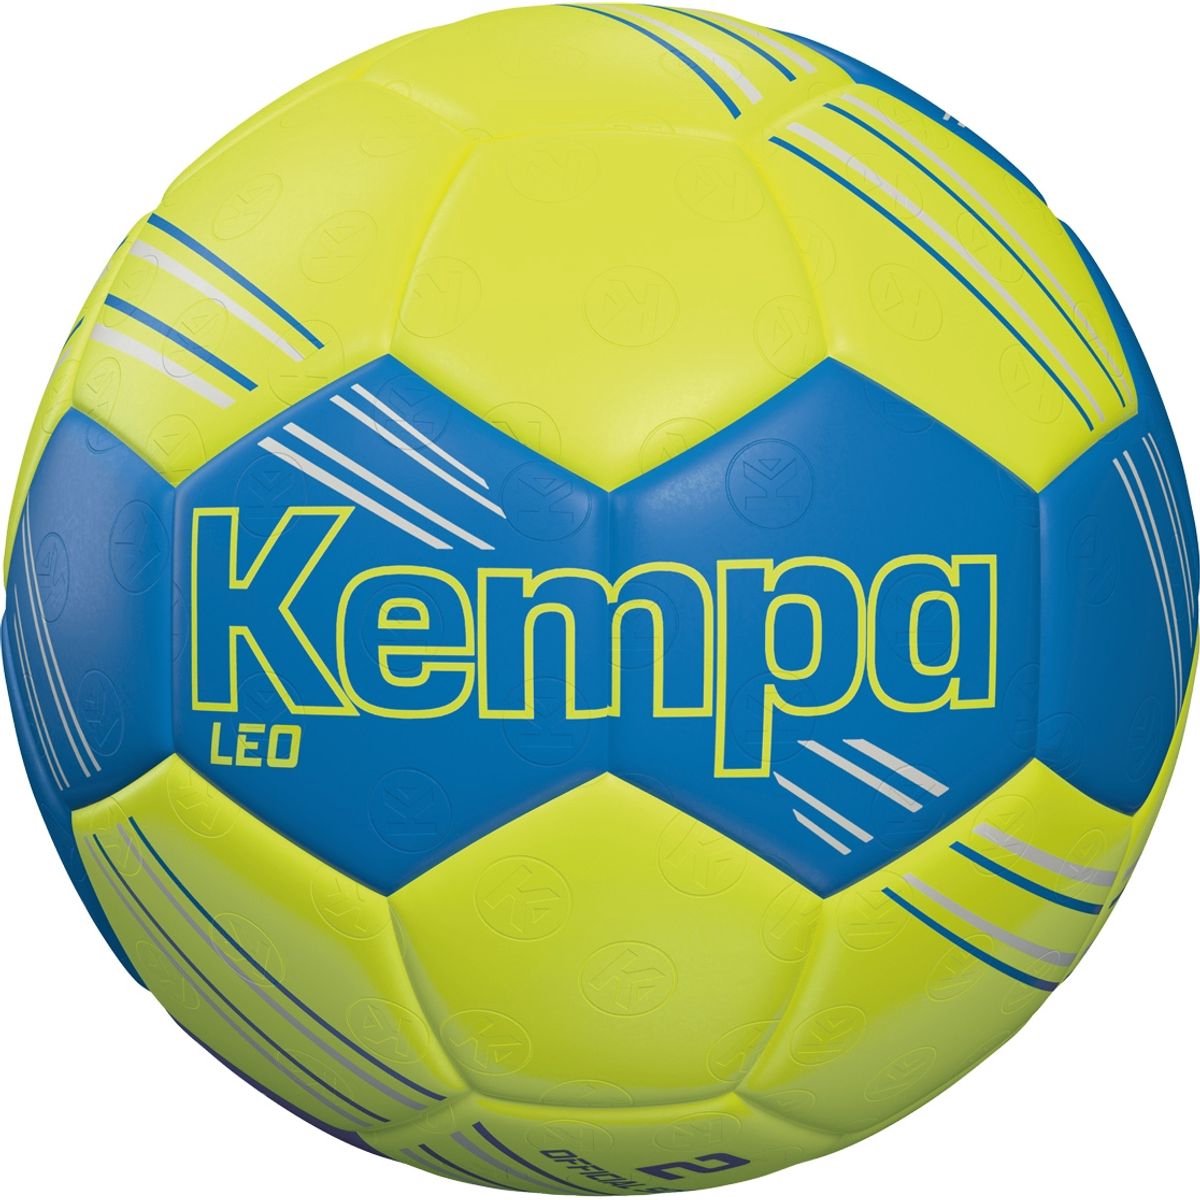 Kempa Leo Handbal - Fluogeel / Royal | Maat: 0-KIDS